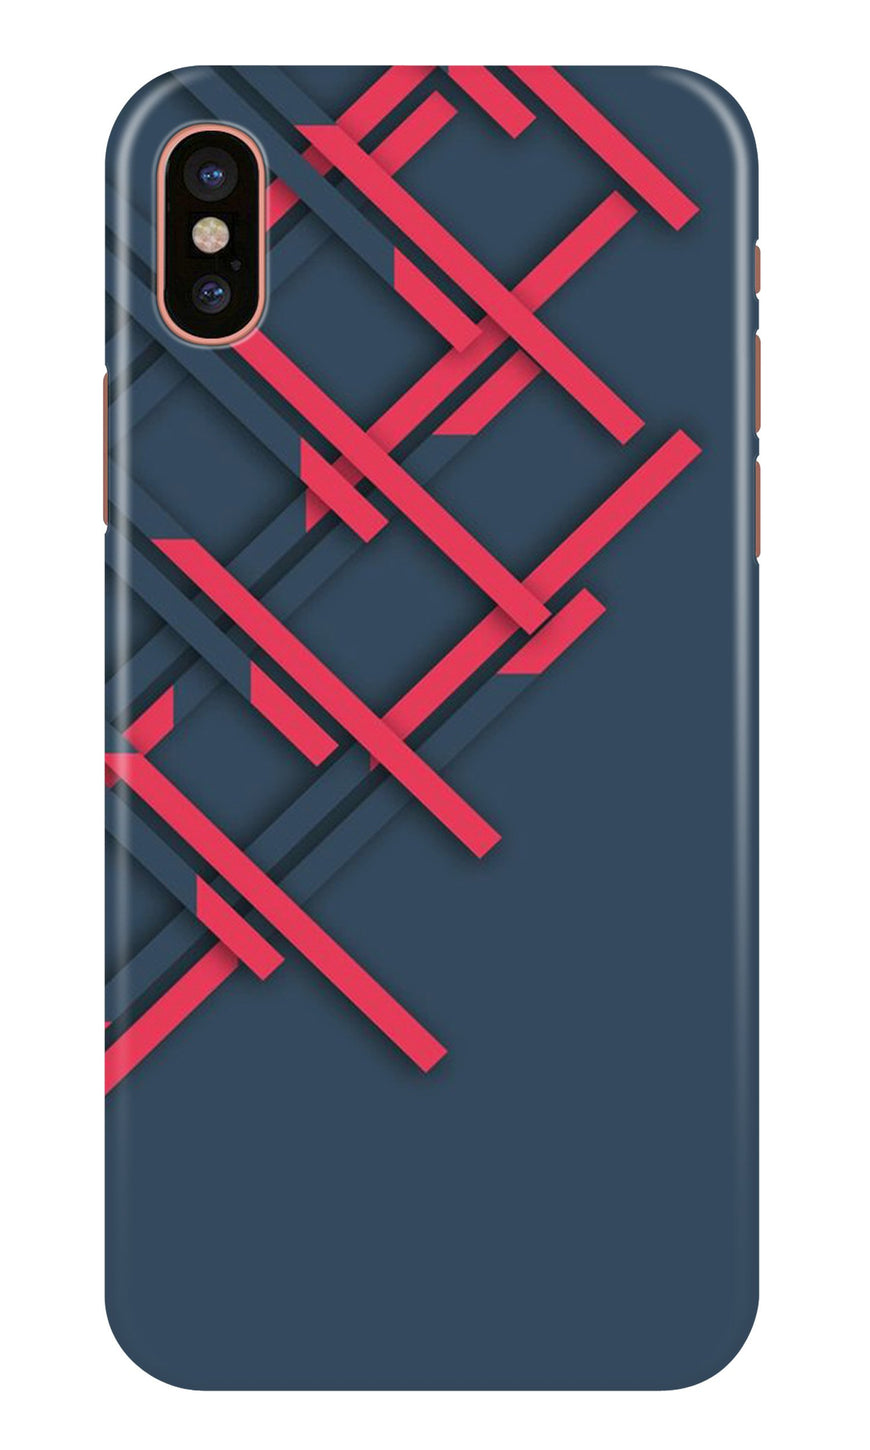 Designer Case for iPhone X (Design No. 285)